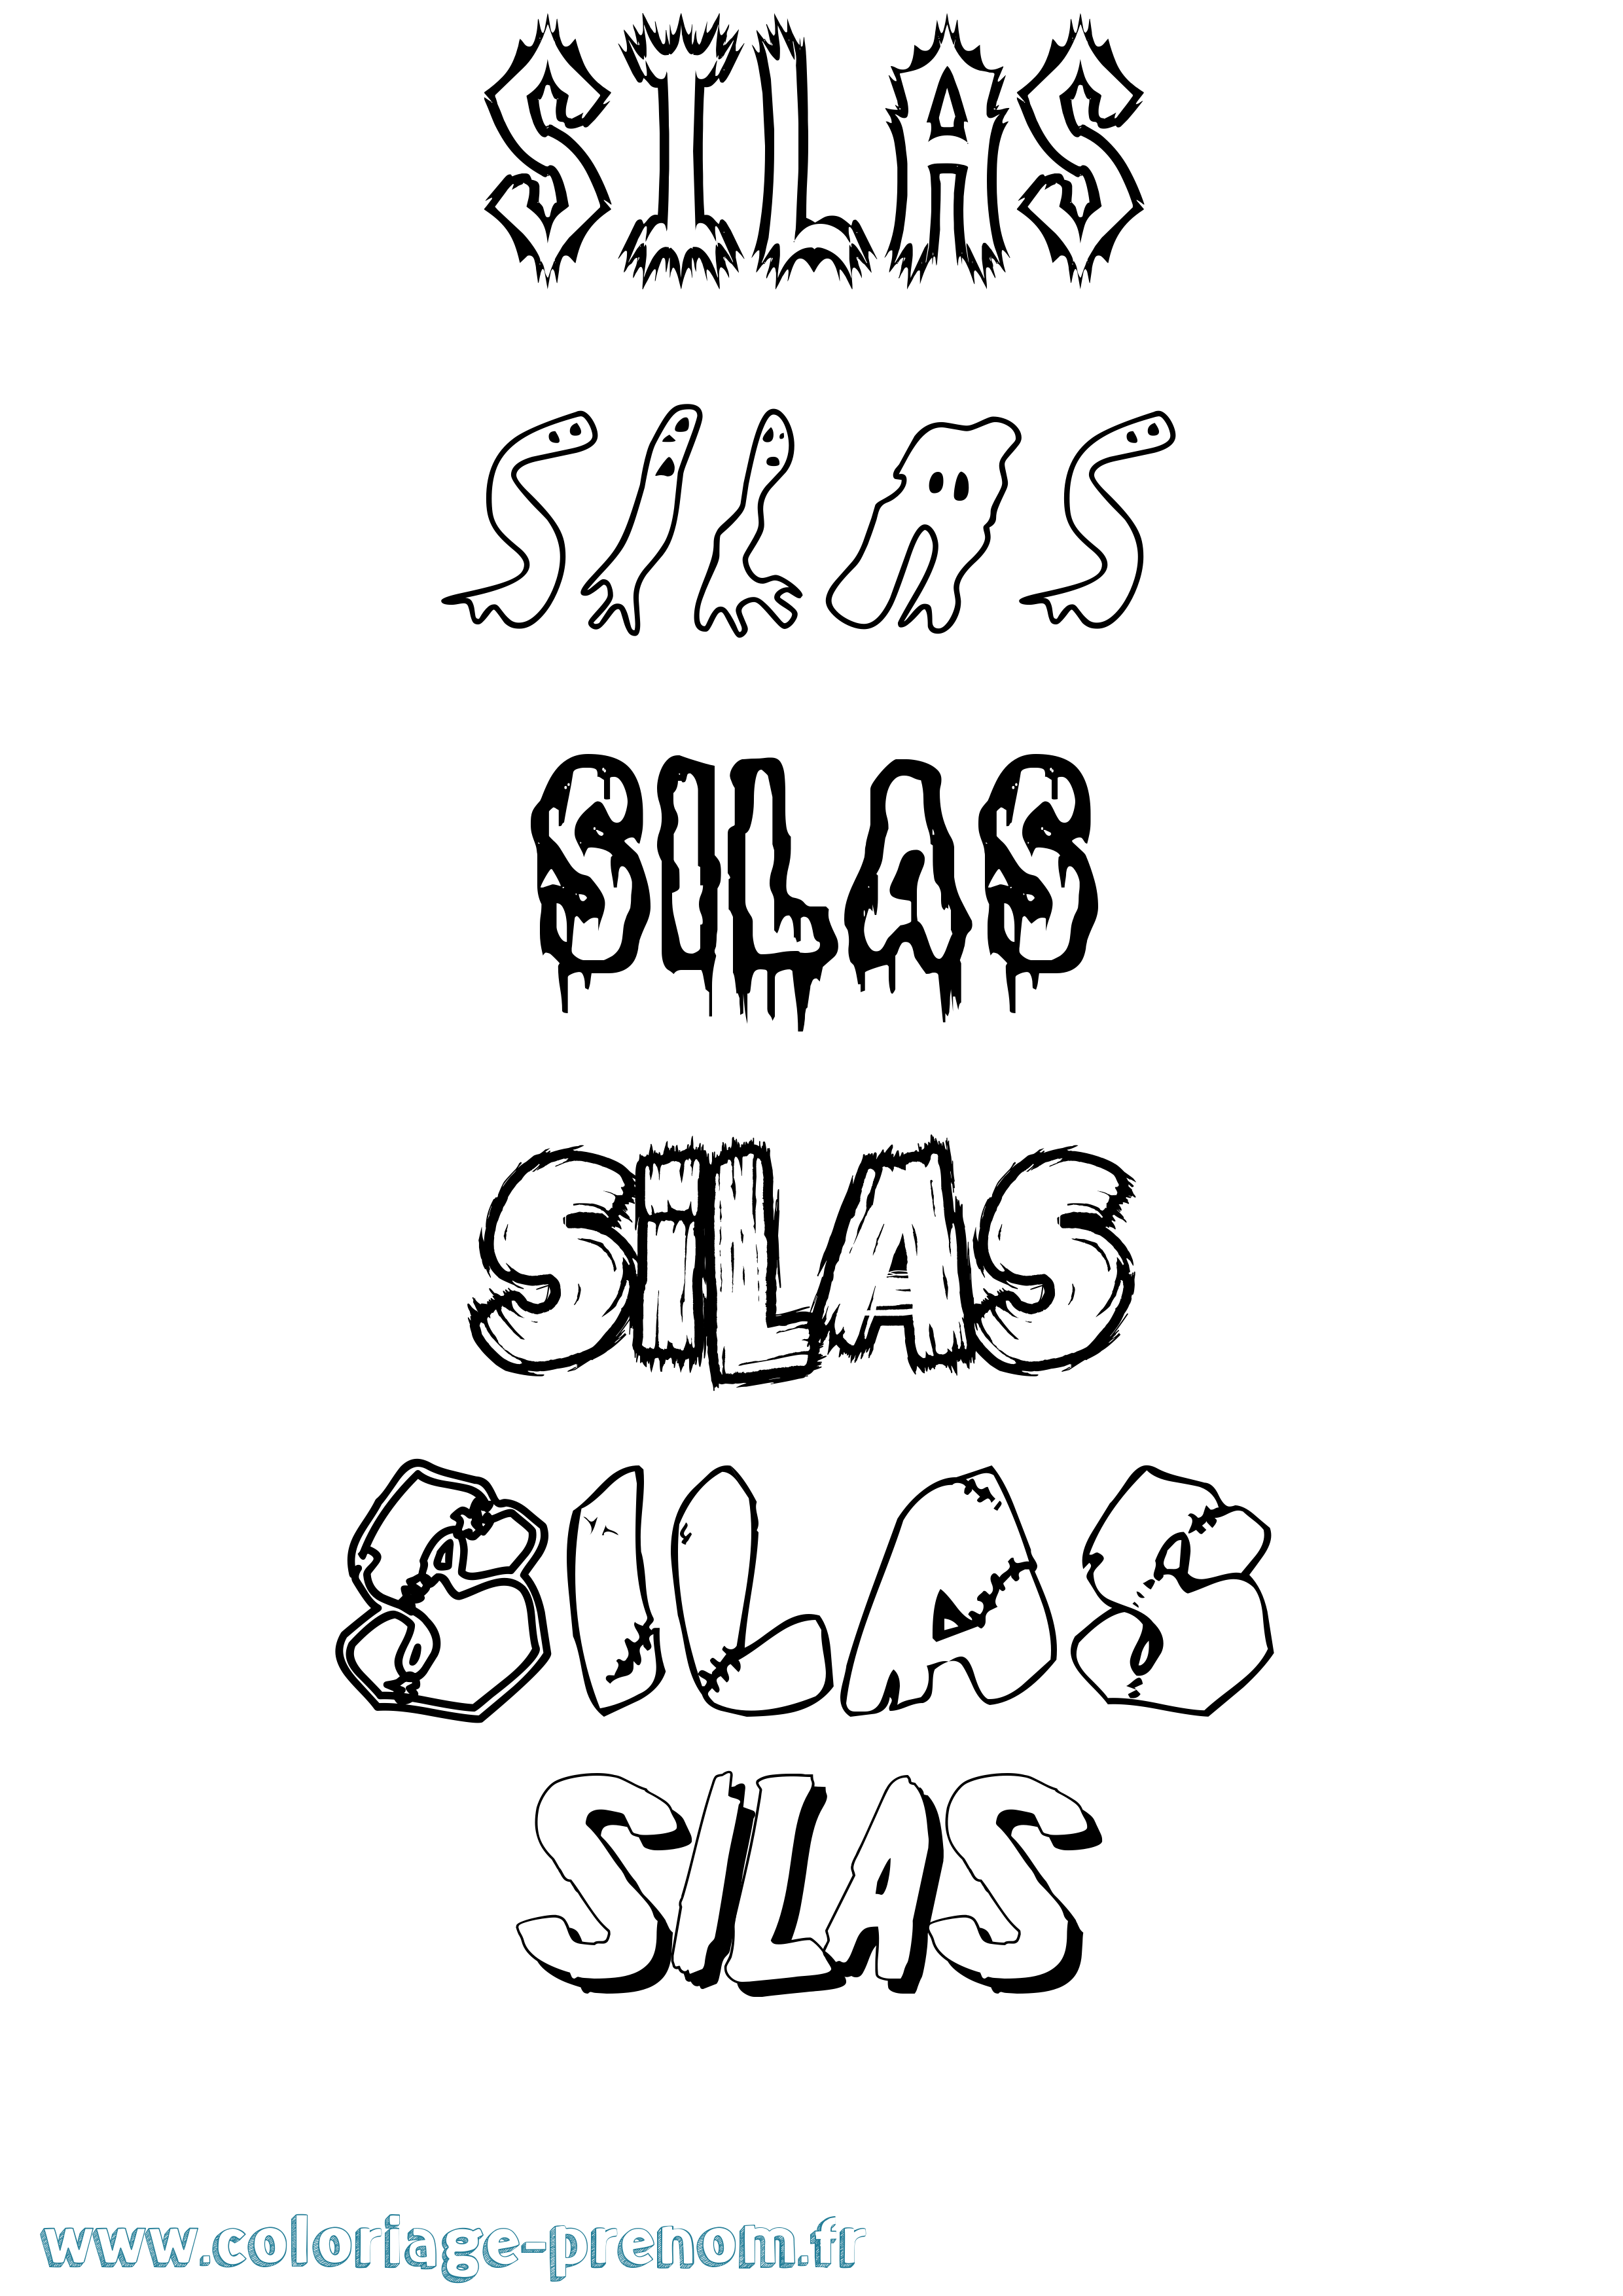 Coloriage prénom Silas Frisson